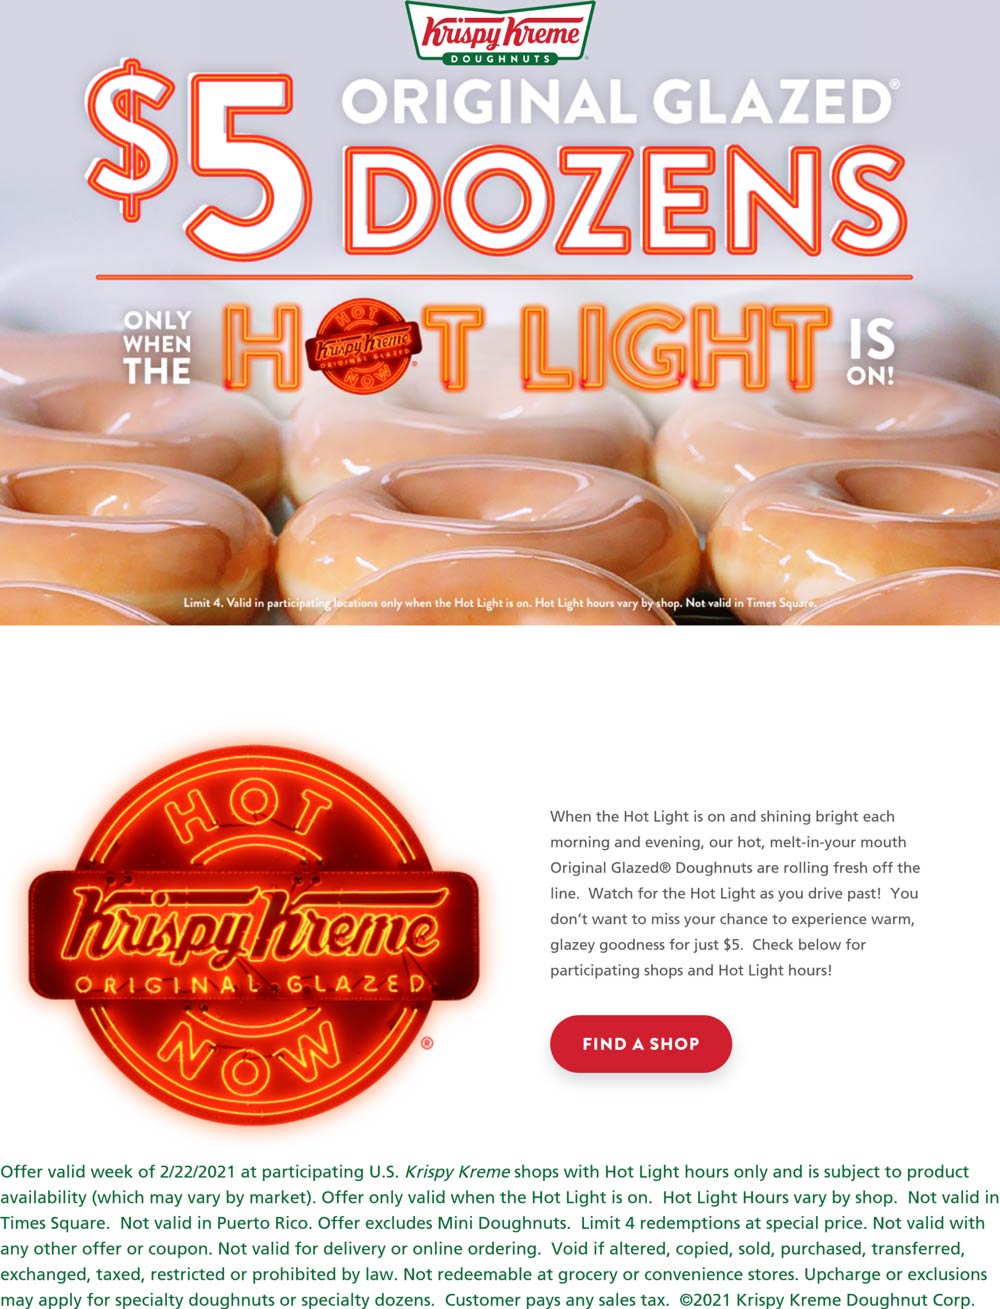 Krispy Kreme restaurants Coupon  $5 glazed dozen doughnuts whenever hot light illuminated at Krispy Kreme #krispykreme 